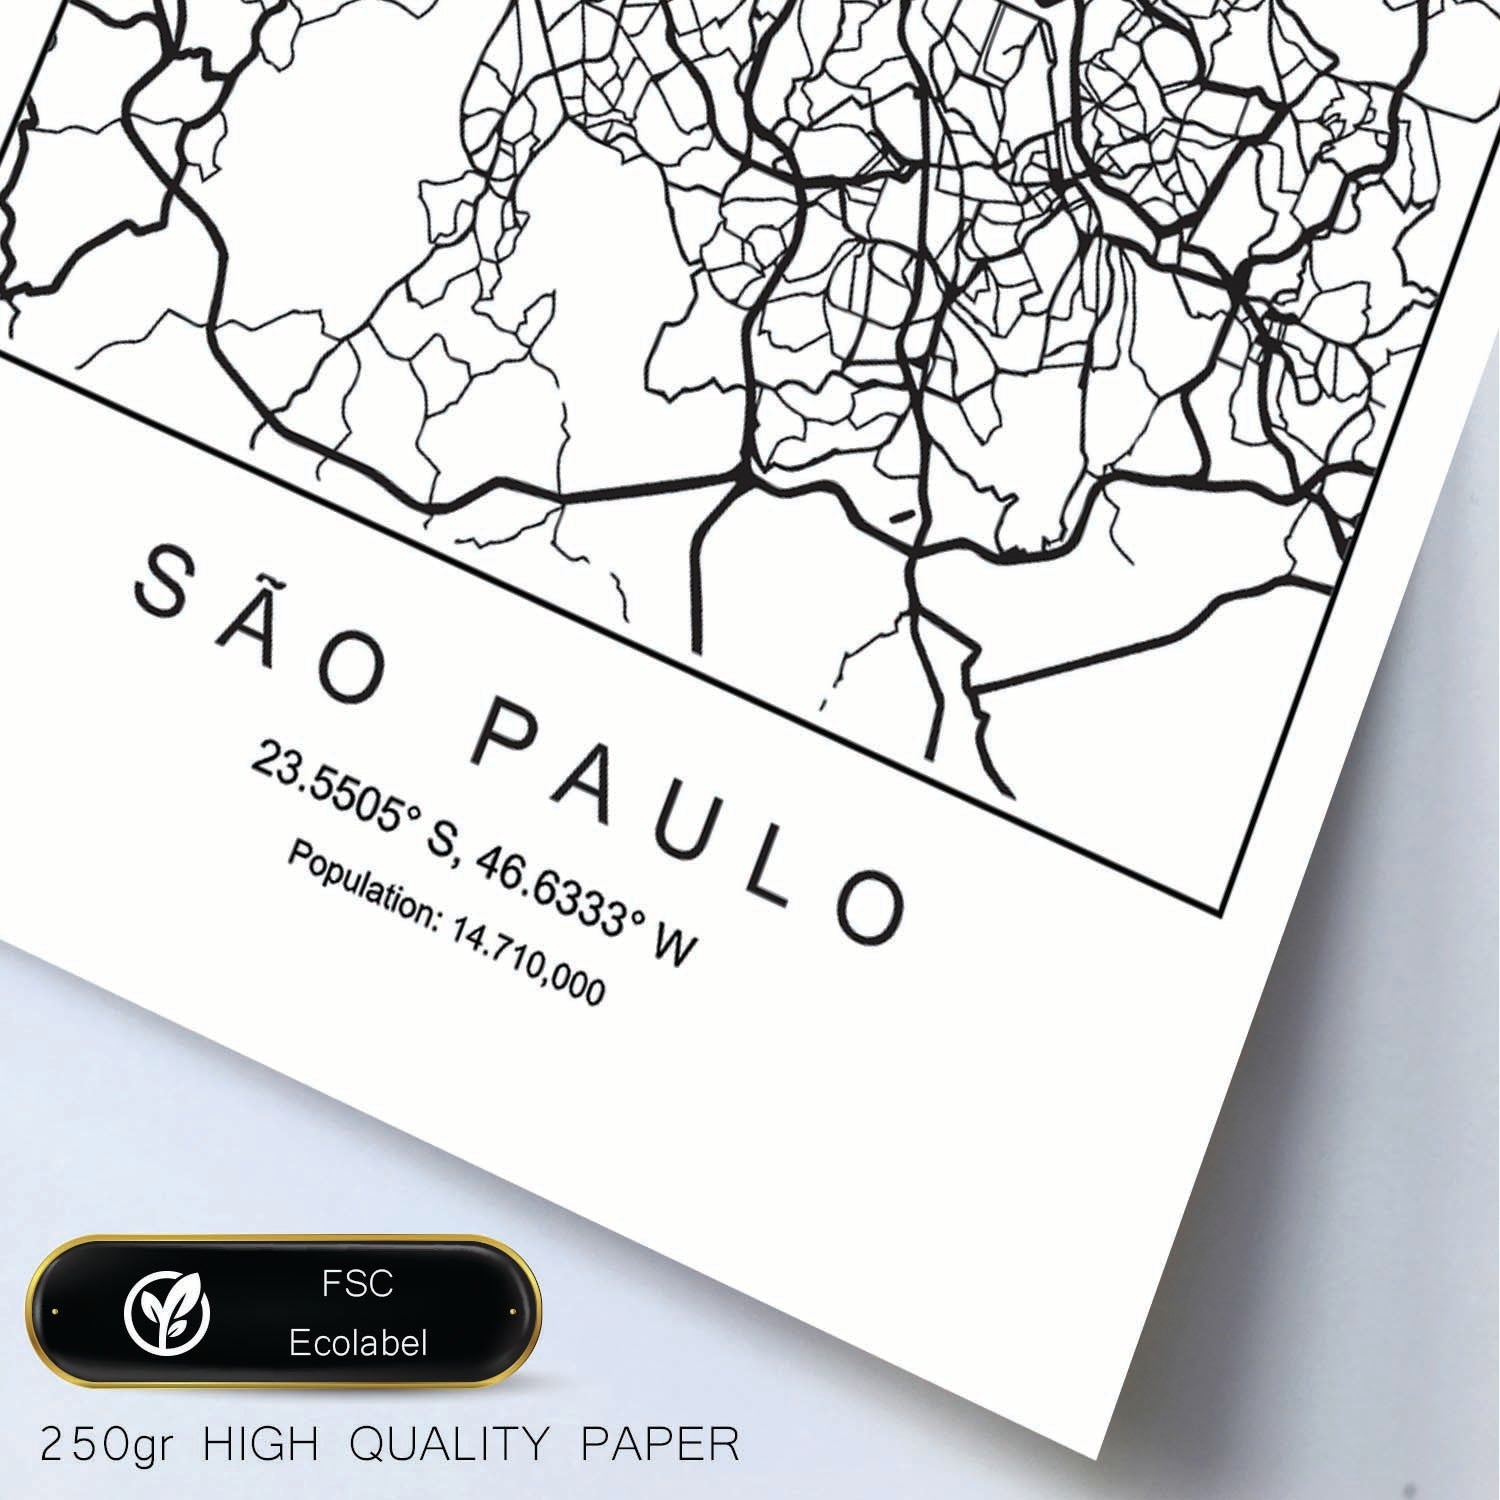 Lámina mapa de la ciudad Sao paulo estilo nordico en blanco y negro.-Artwork-Nacnic-Nacnic Estudio SL